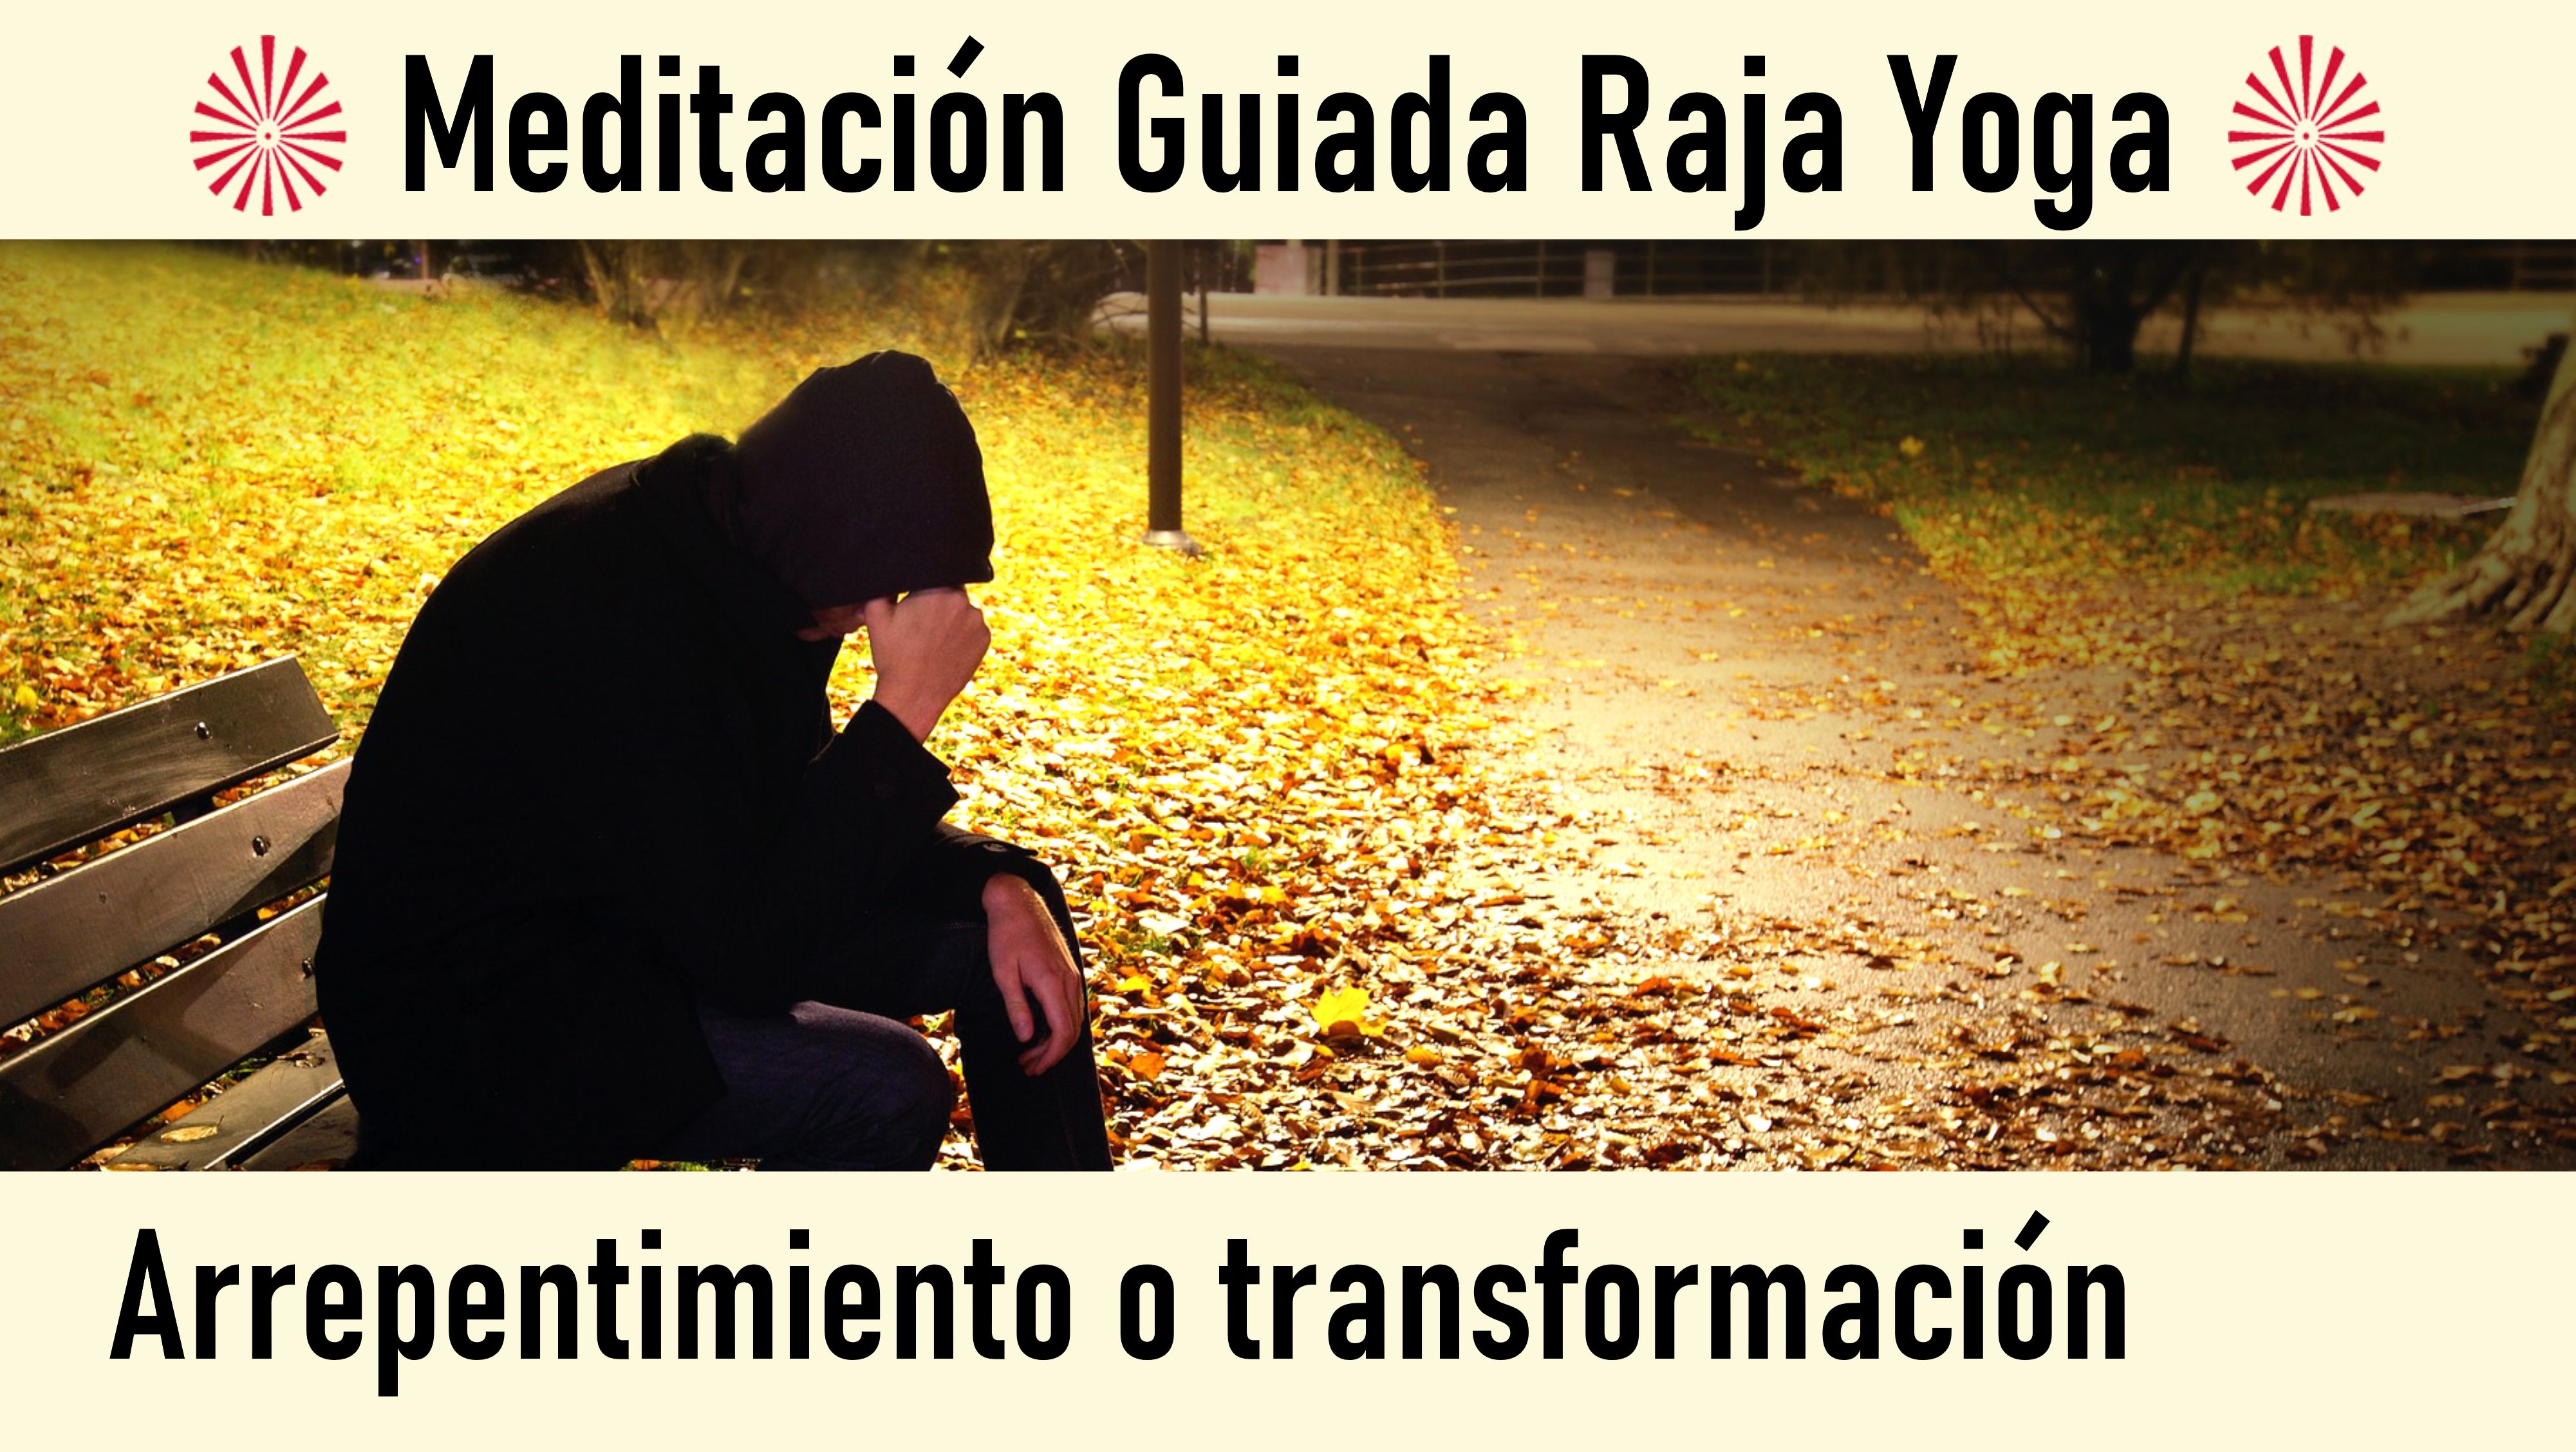 Meditación Raja Yoga: Arrepentimiento o transformación (29 Julio 2020) On-line desde Sevilla